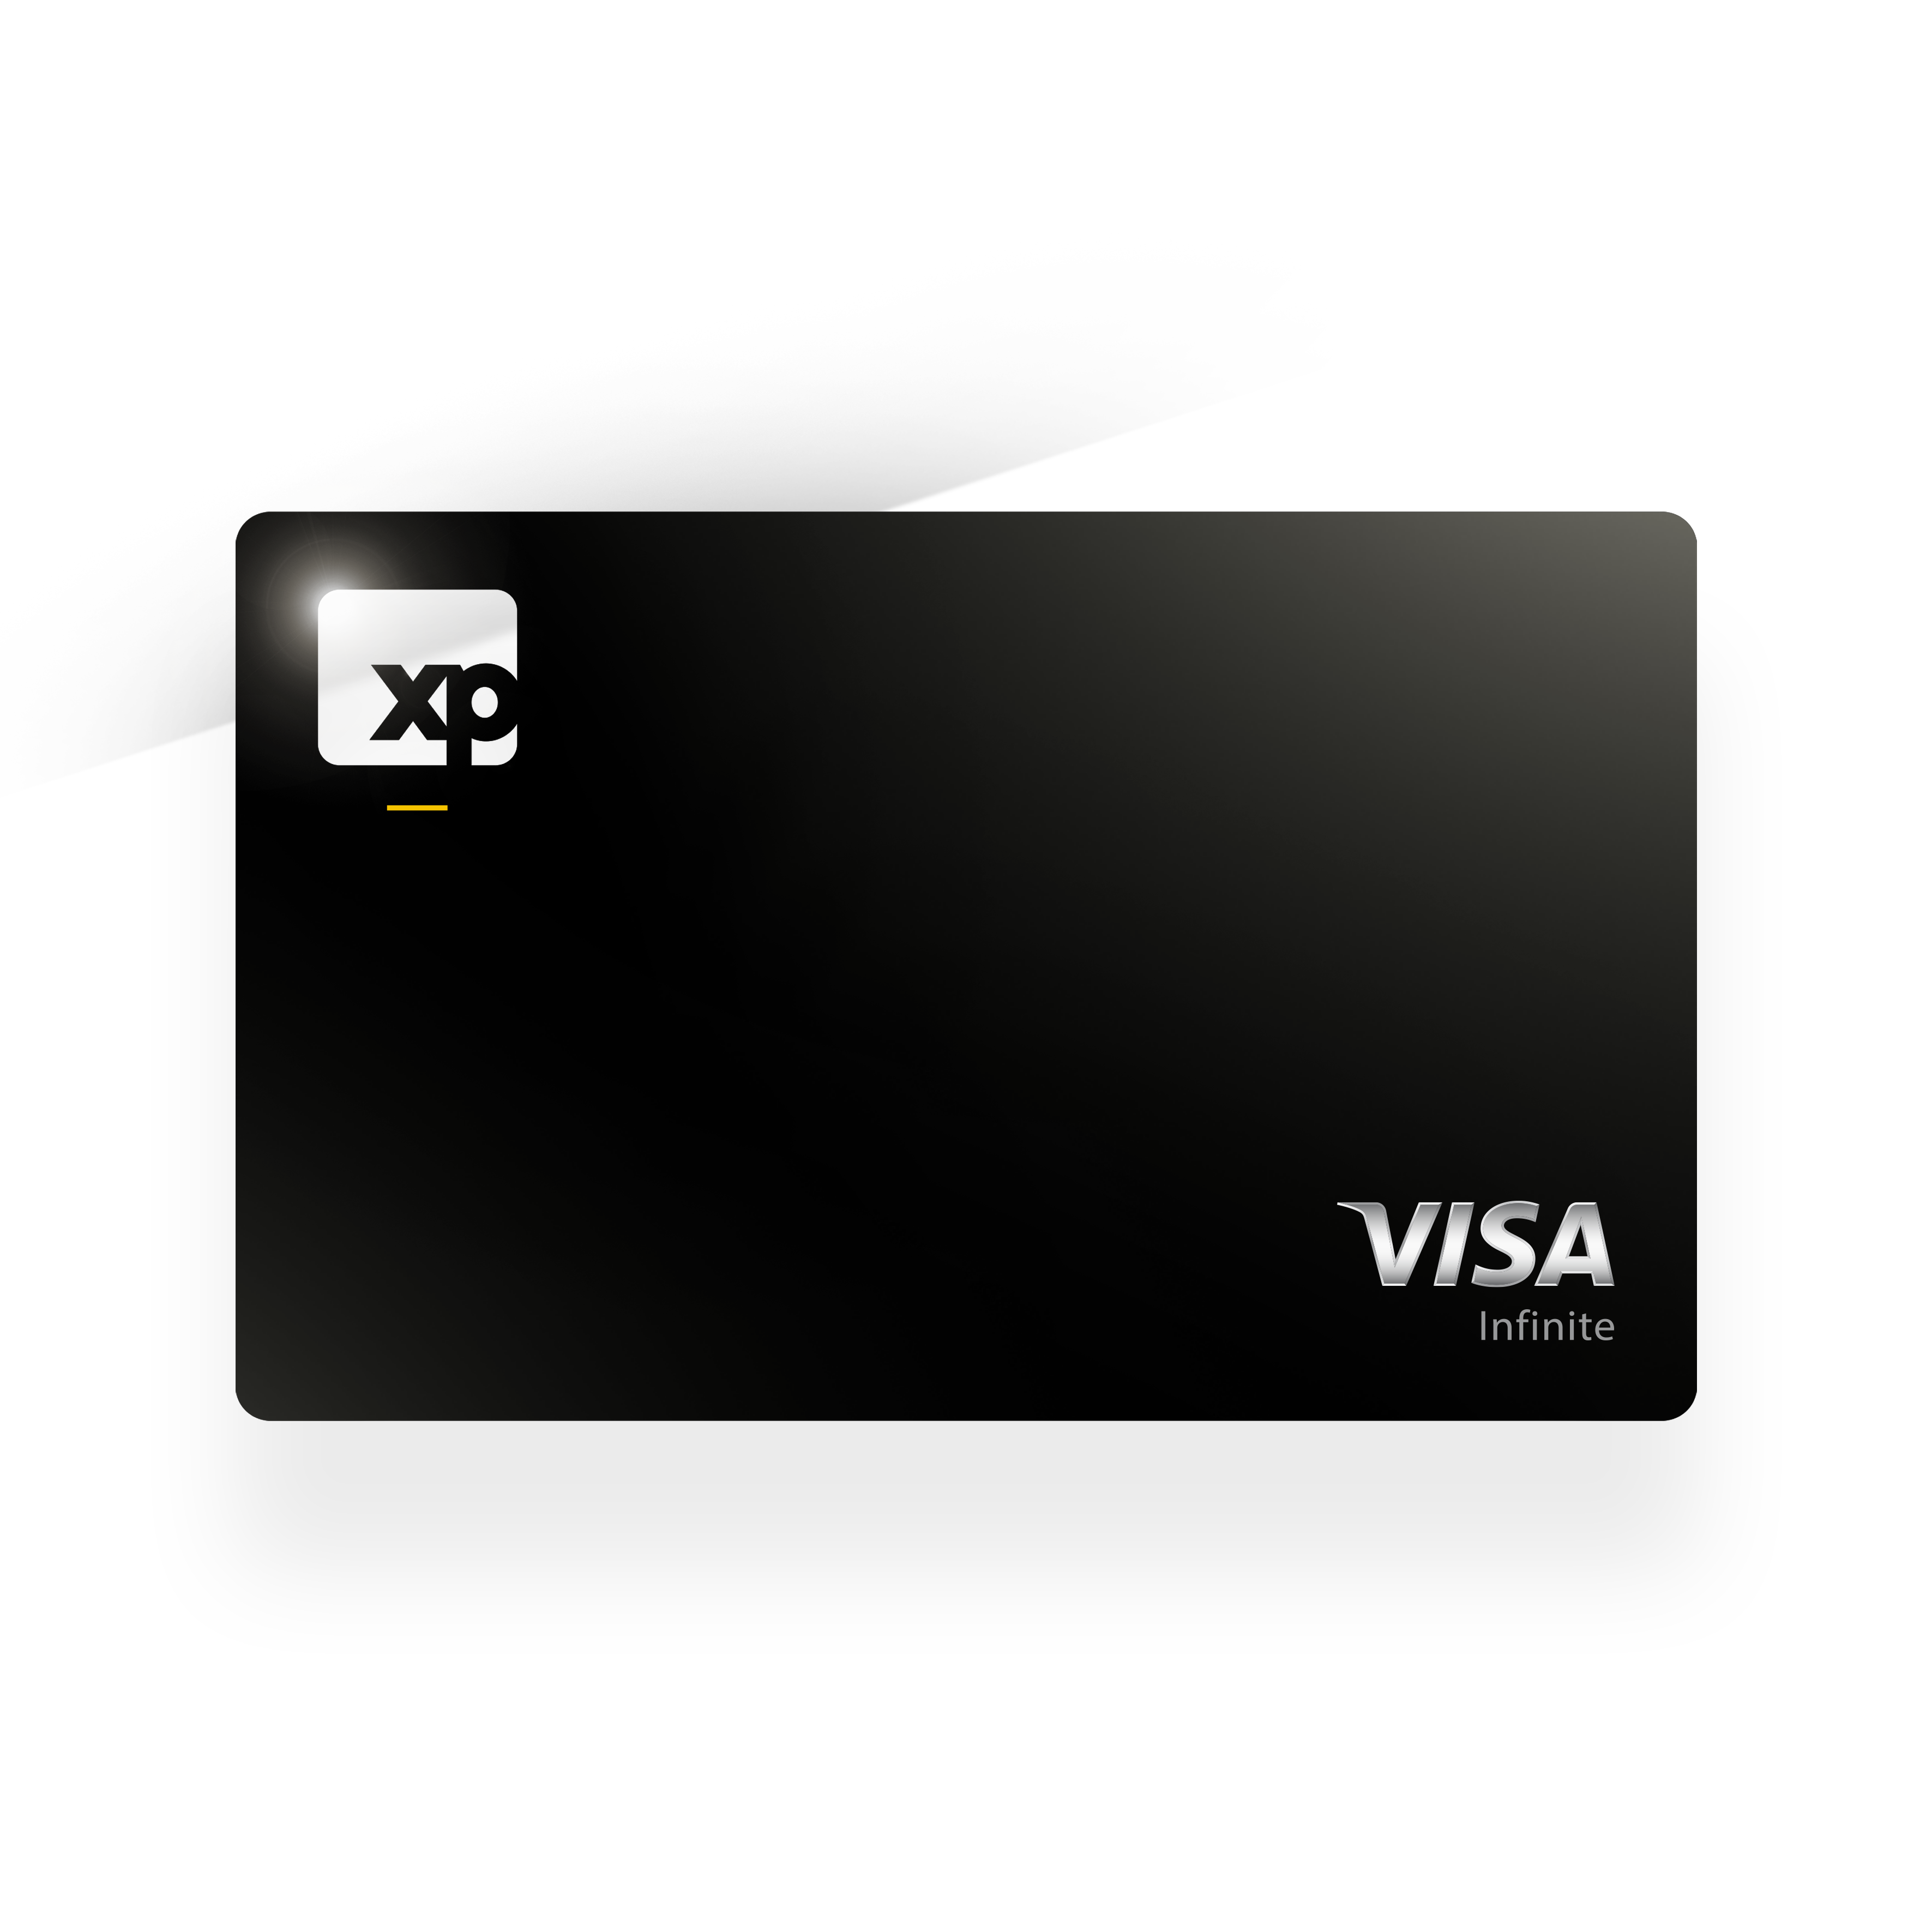 O cartão da XP será disponibilizado para os clientes no final do ano